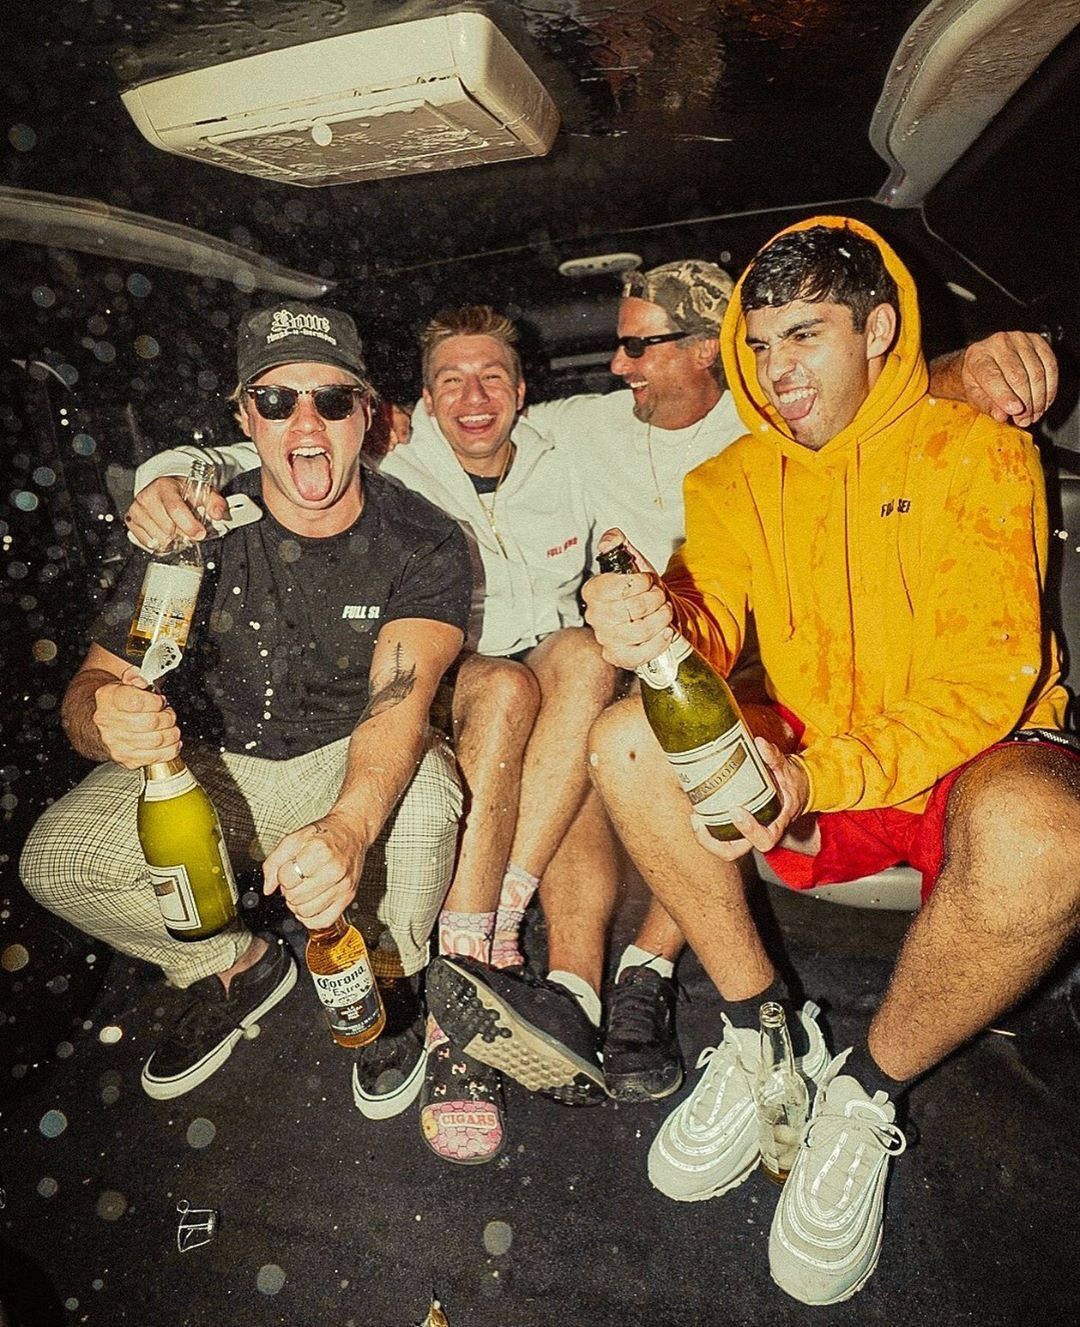 Fire mænd sidder i bagsædet af en bil med flasker af champagne. Wallpaper